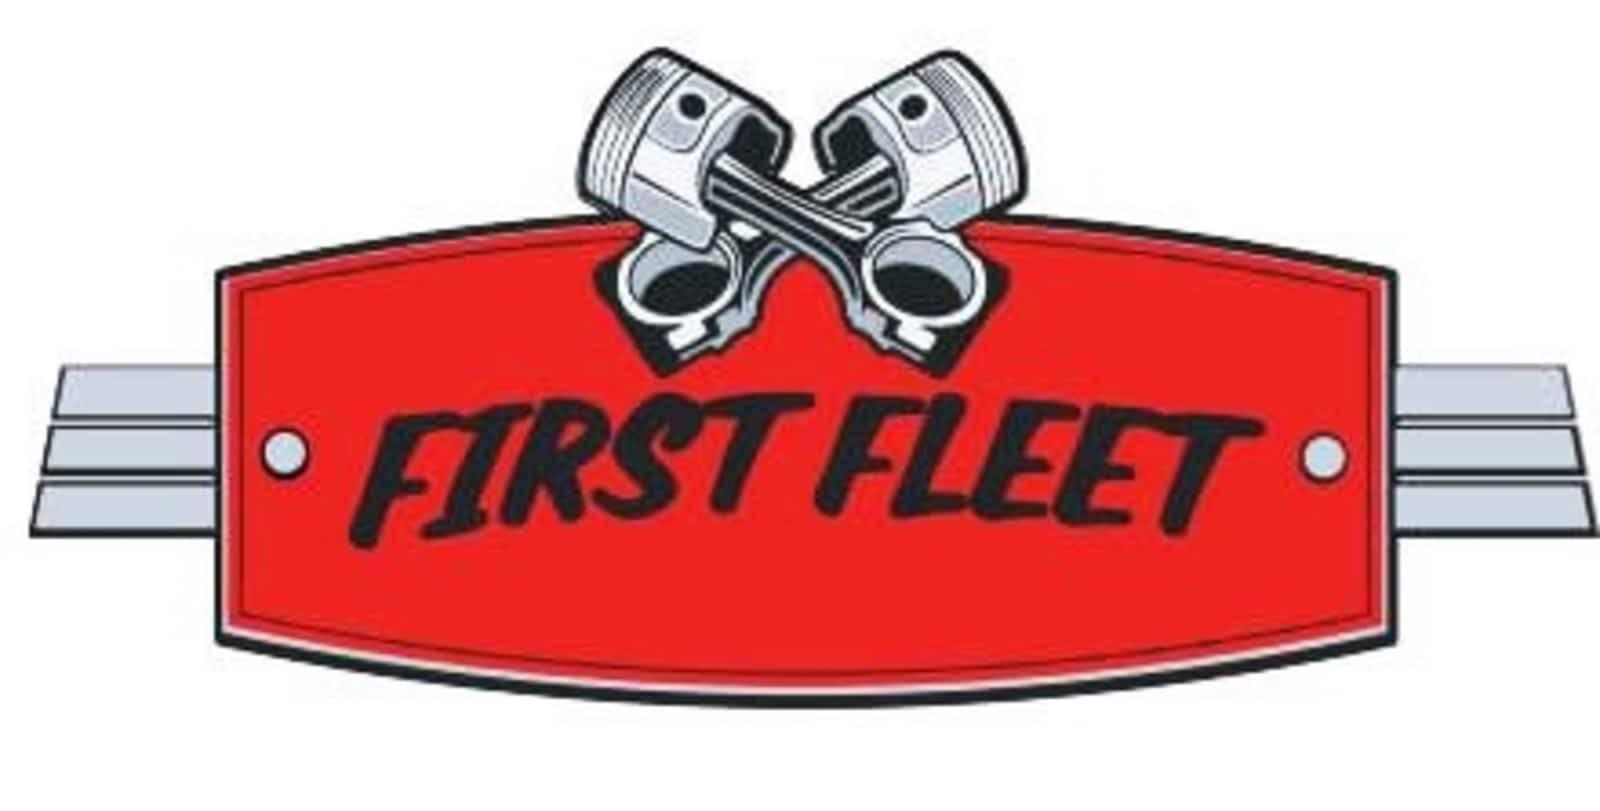 First Fleet (Small)